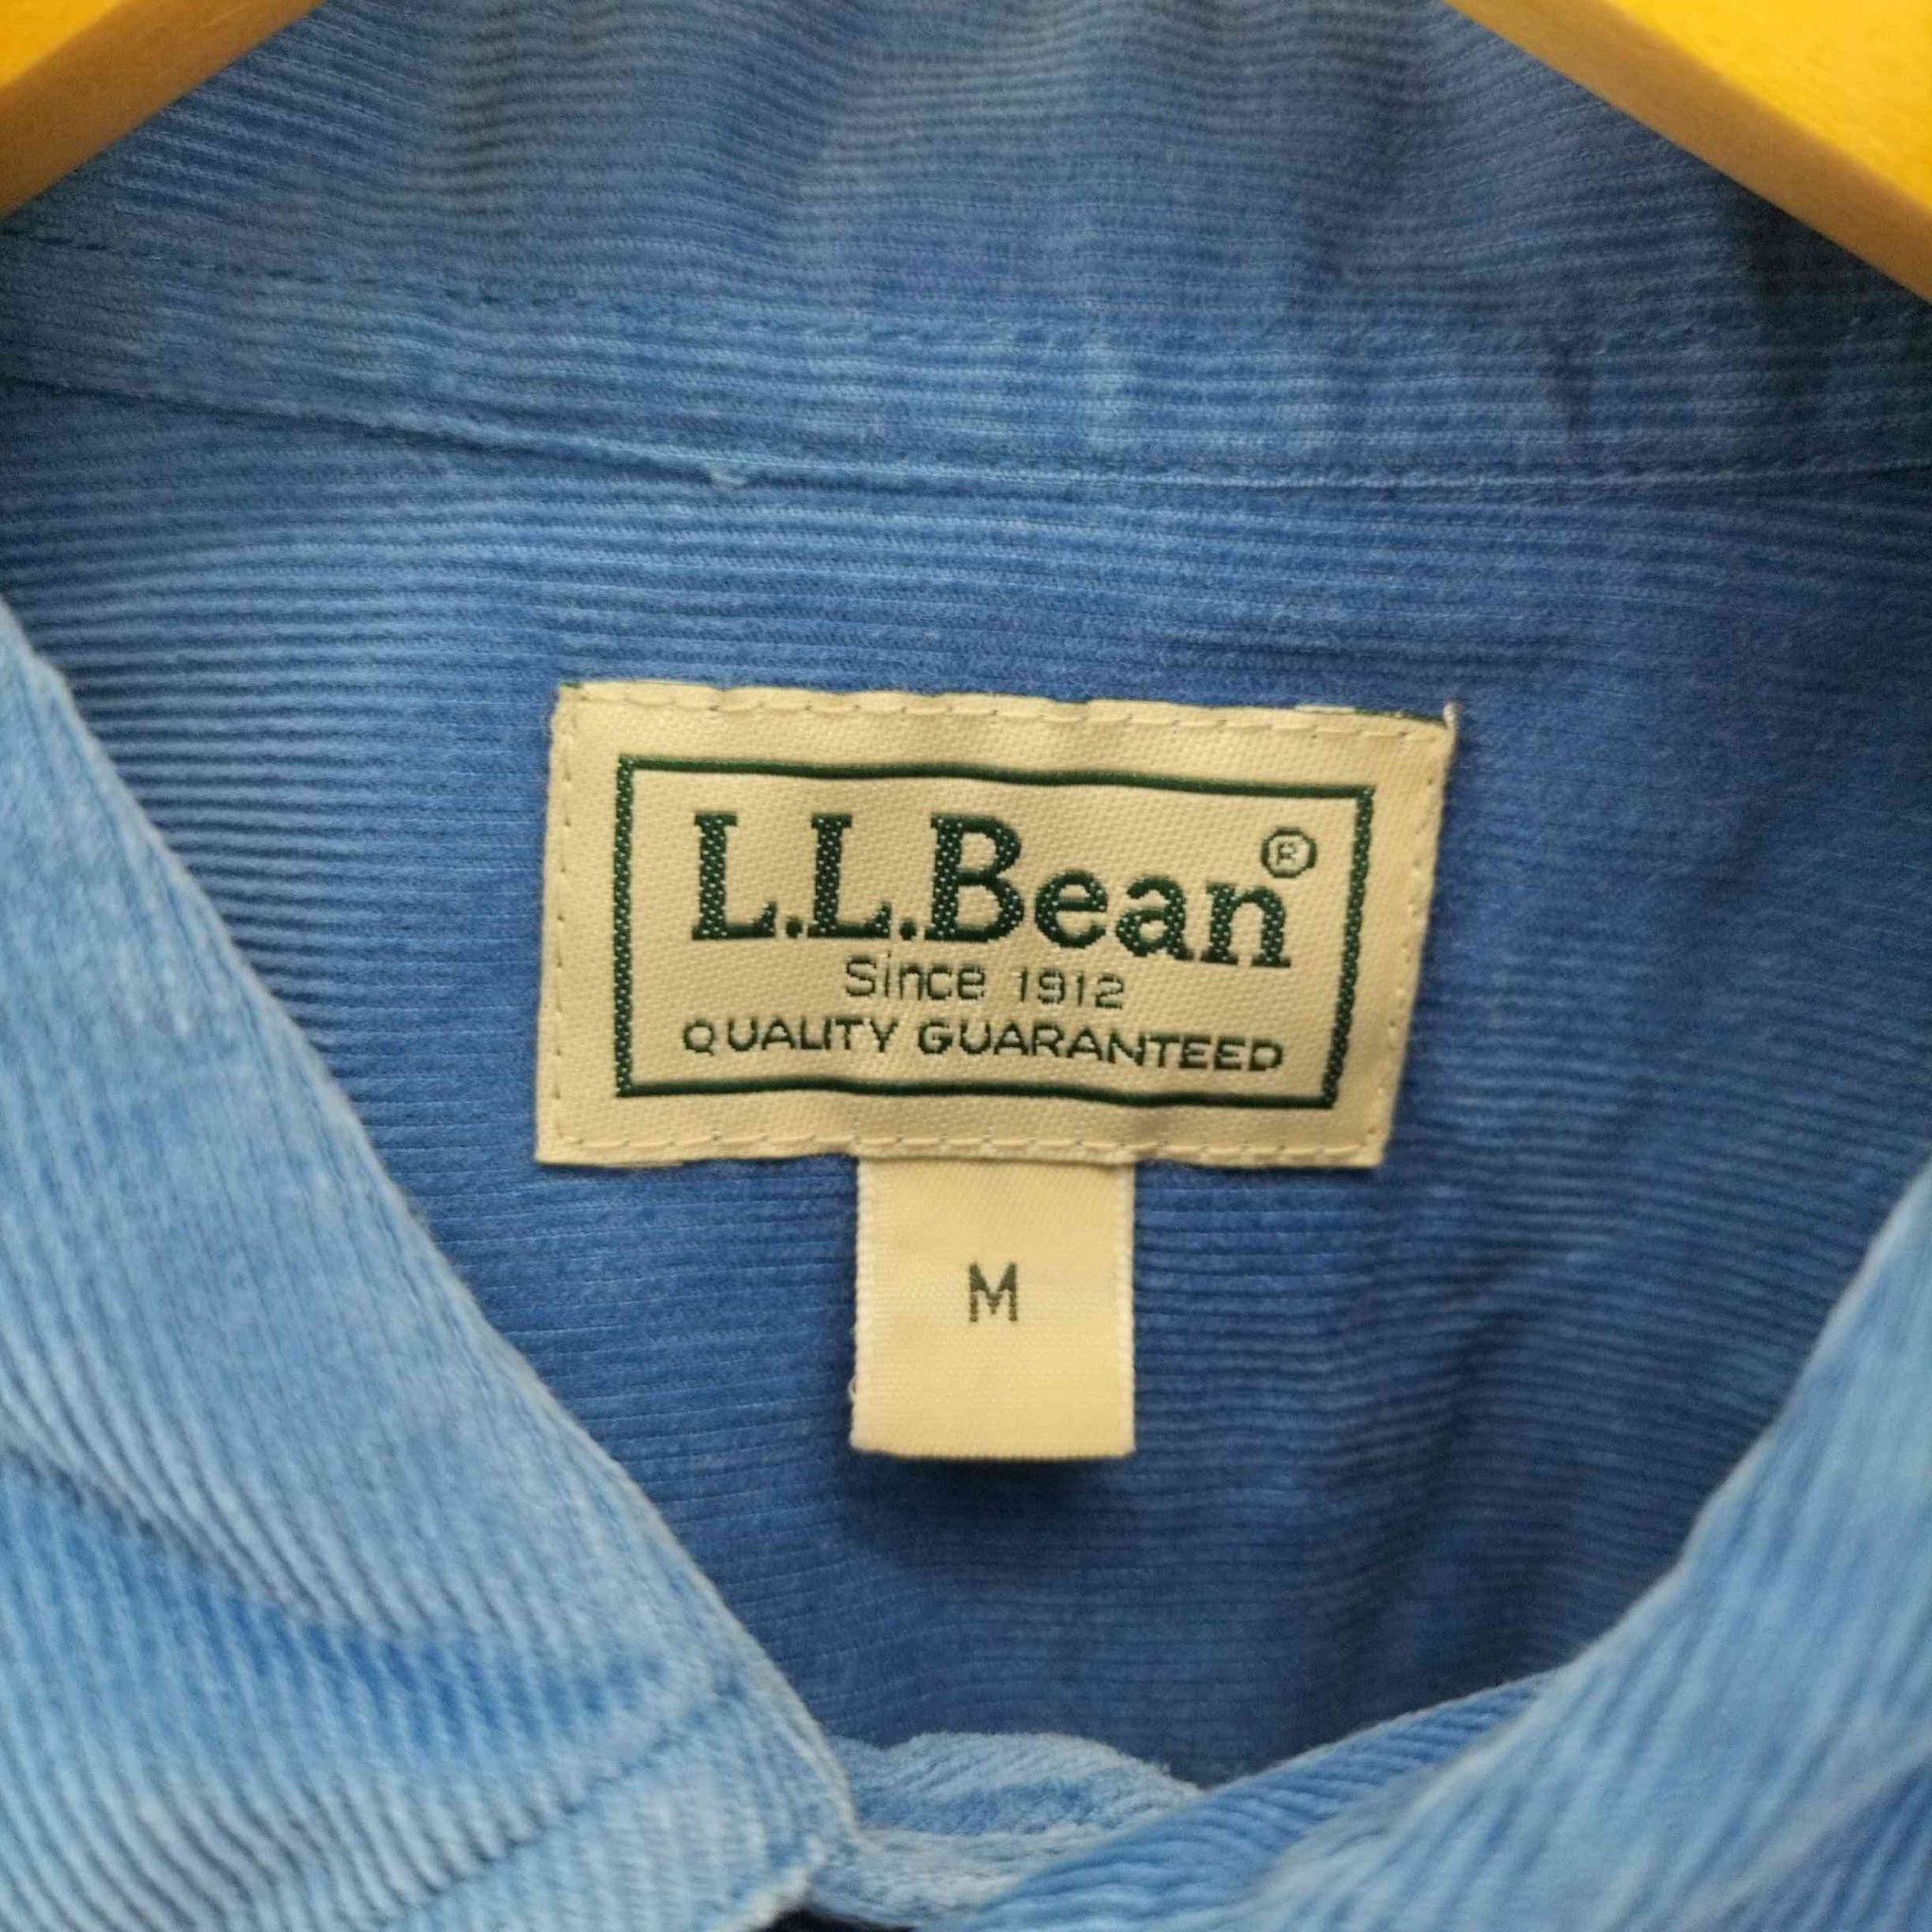 L.L.Bean(エルエルビーン)コーデュロイ ボタンダウン L/S シャツ